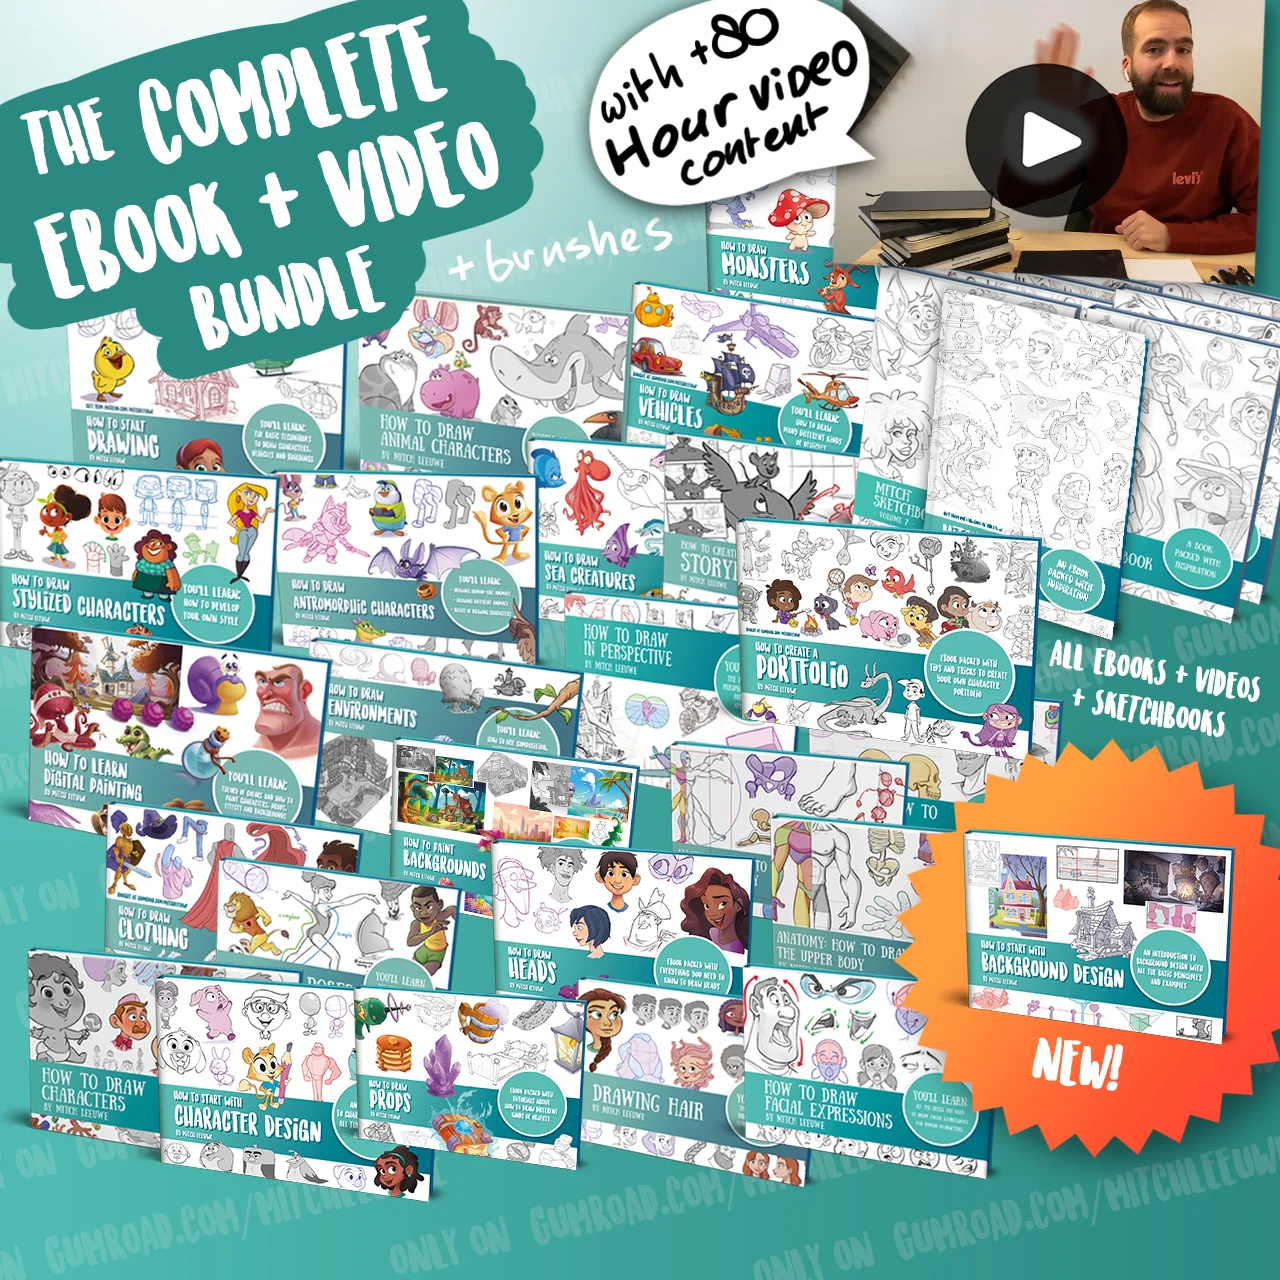 如何绘画完整视频教程+电子书 by Mitch Leeuwe